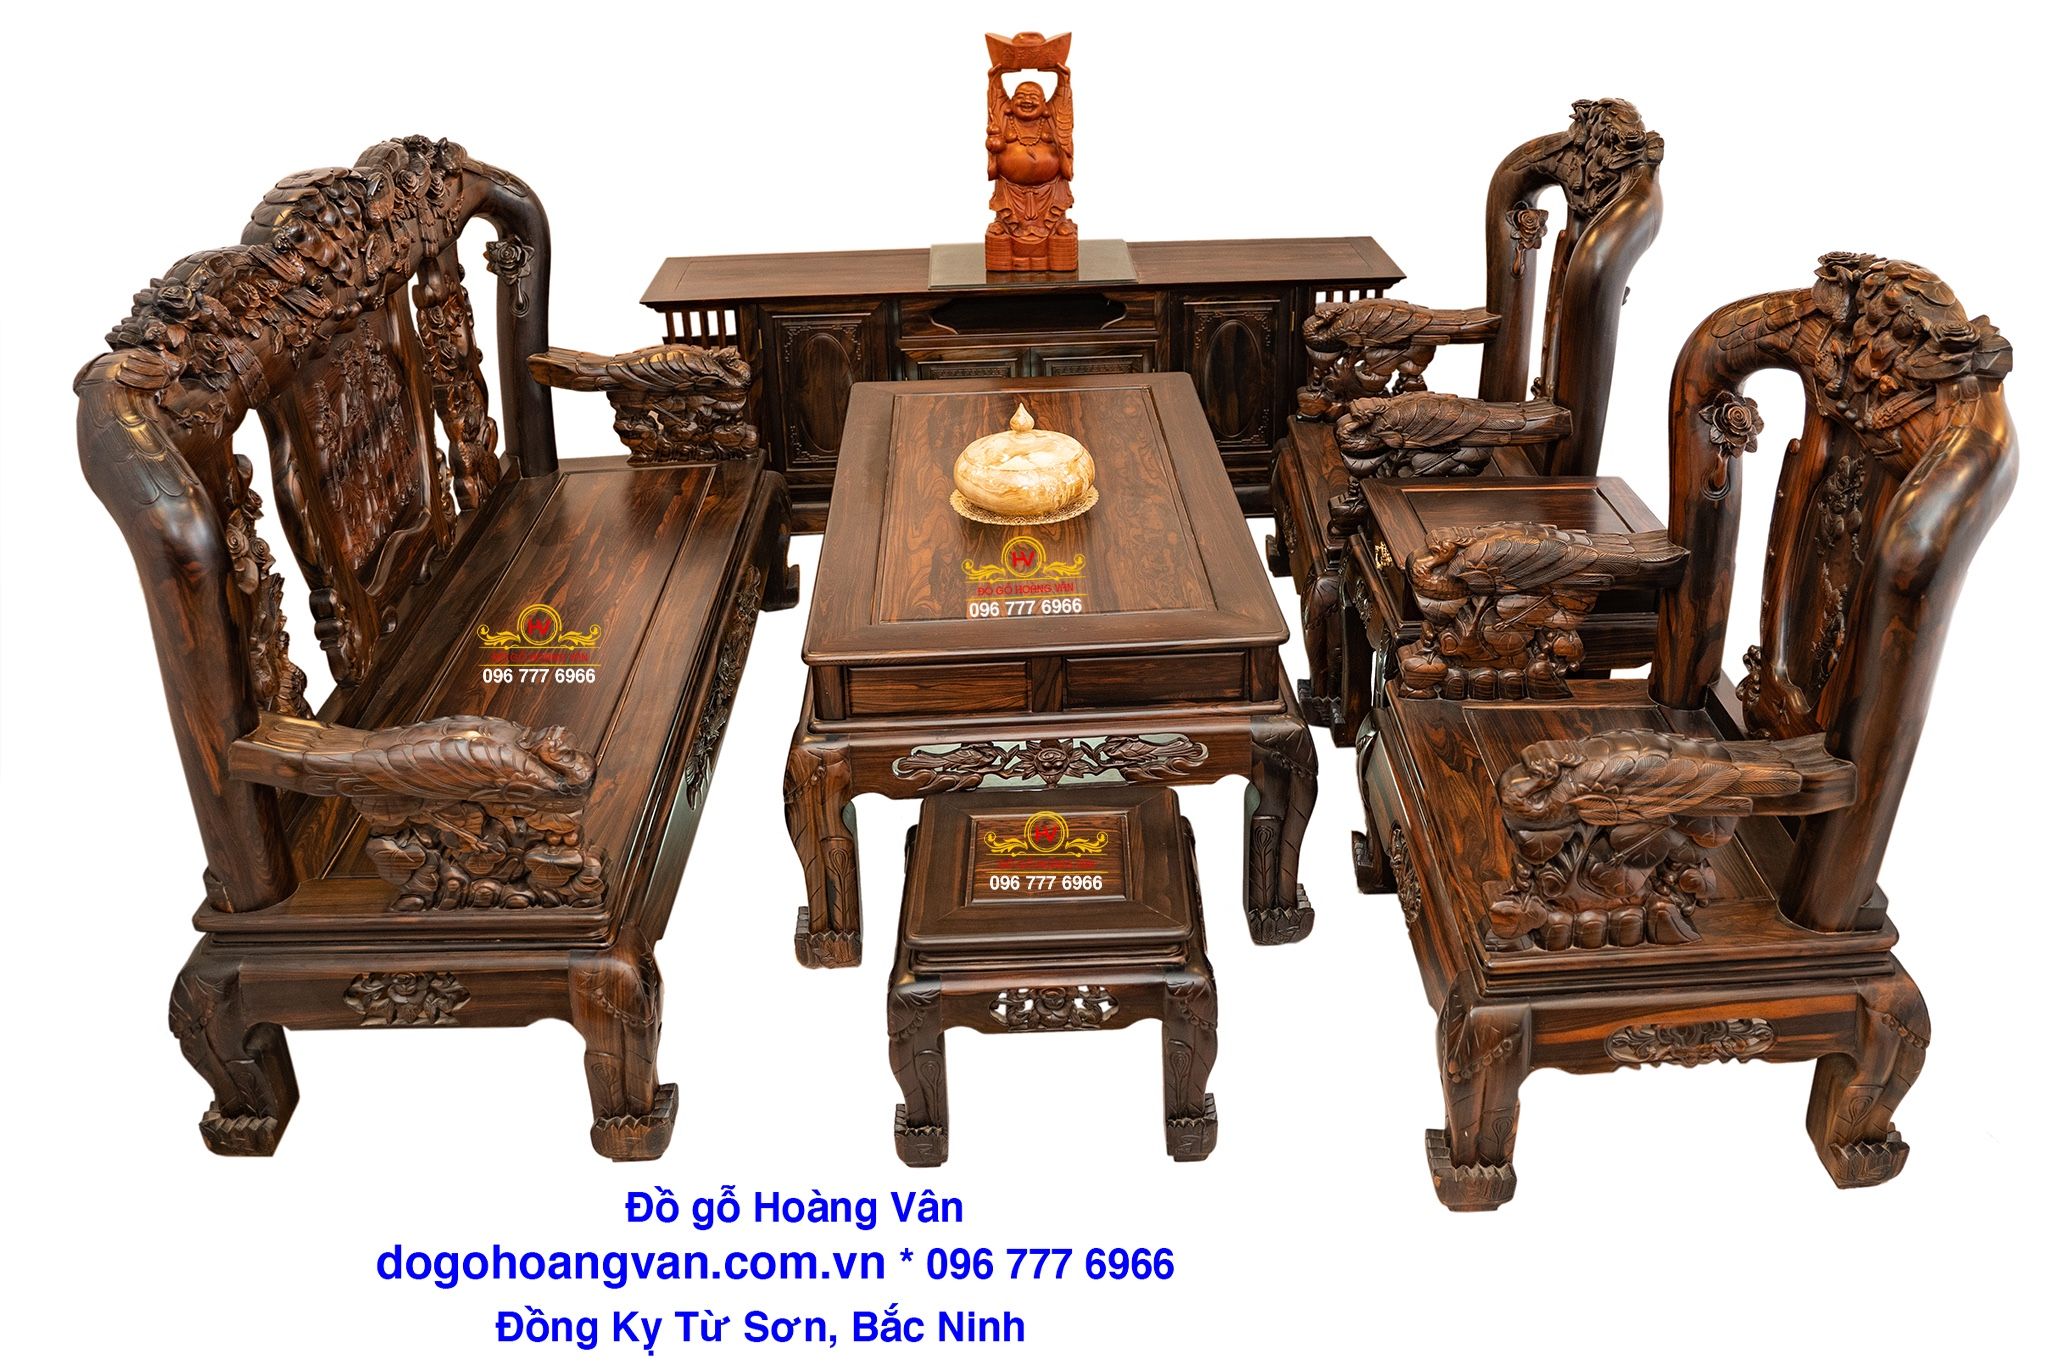 Bộ bàn ghế đồng kỵ Kiểu minh quốc Đào BG021 – Đồ gỗ Hoàng Vân